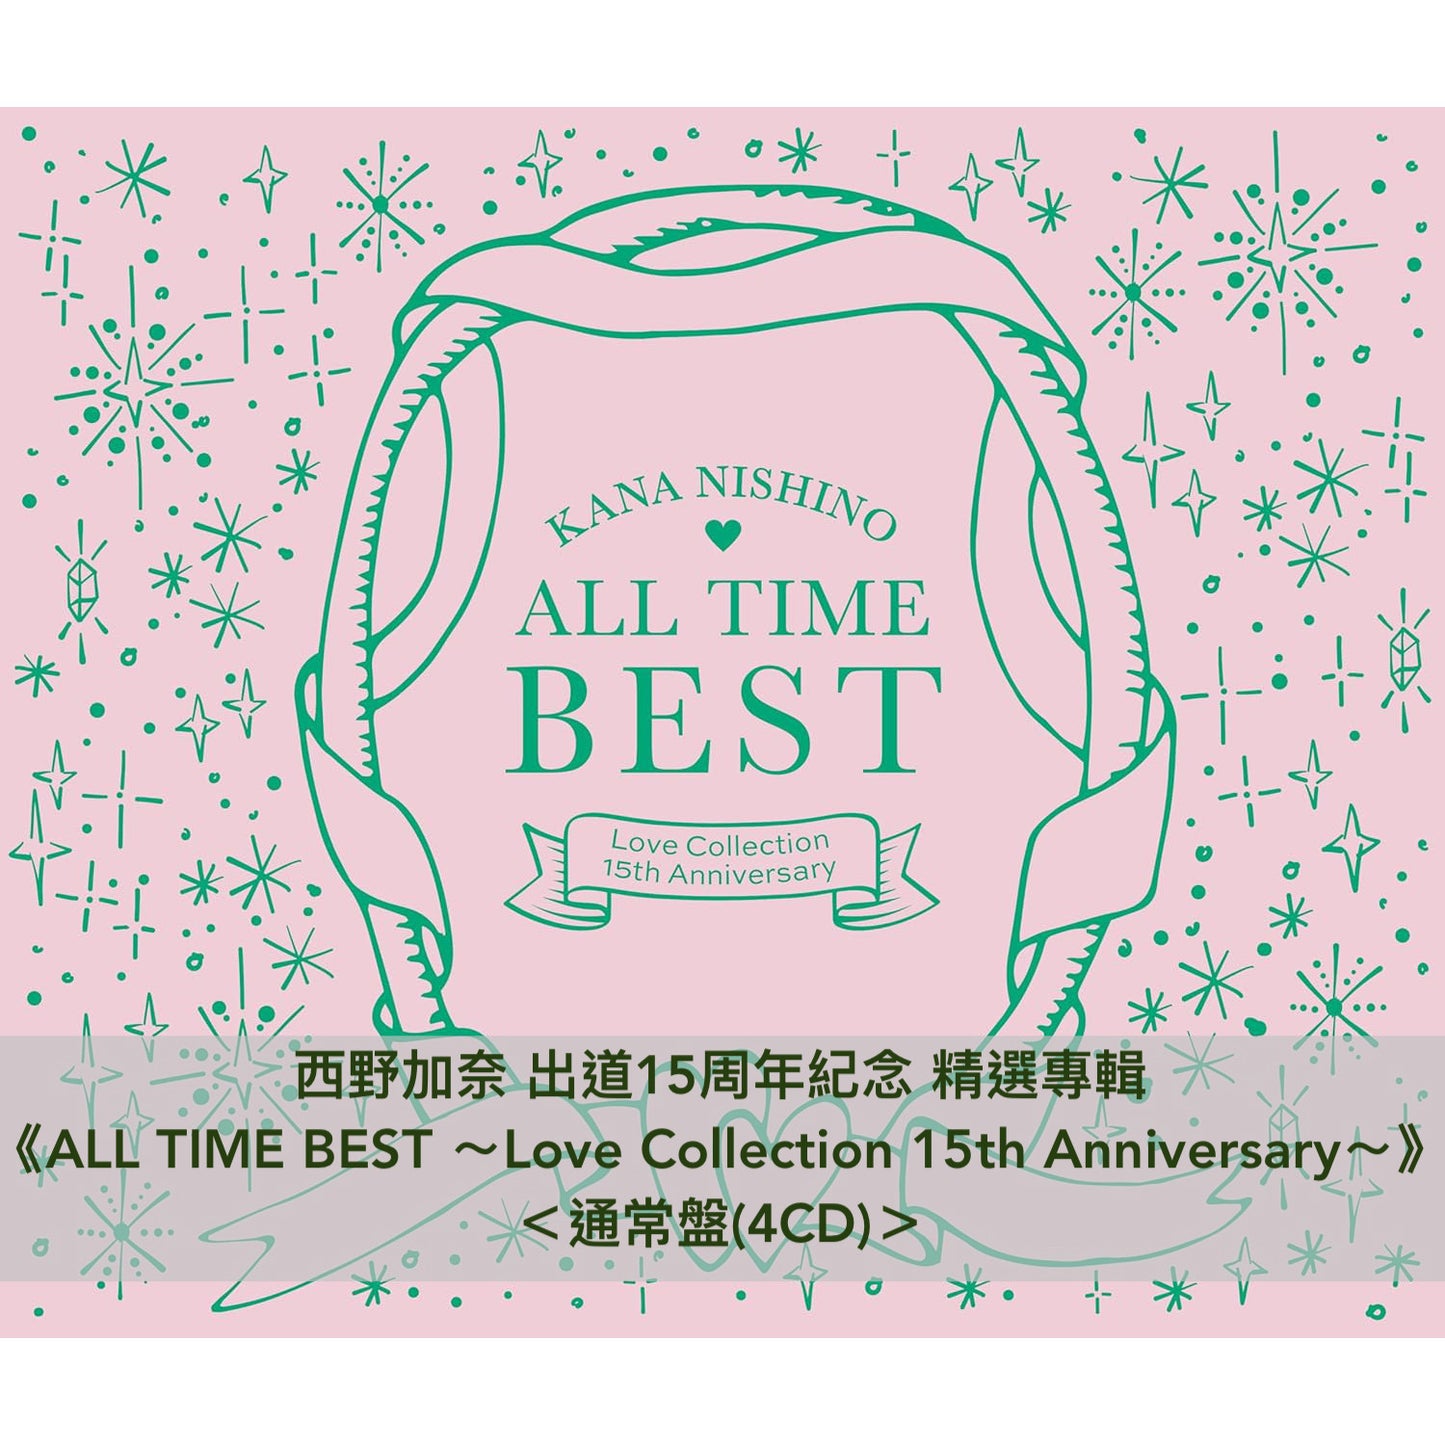 西野加奈 出道15周年紀念 精選專輯《ALL TIME BEST ～Love Collection 15th Anniversary～》＜初回限定盤(4CD＋Blu-ray)／通常盤(4CD)＞